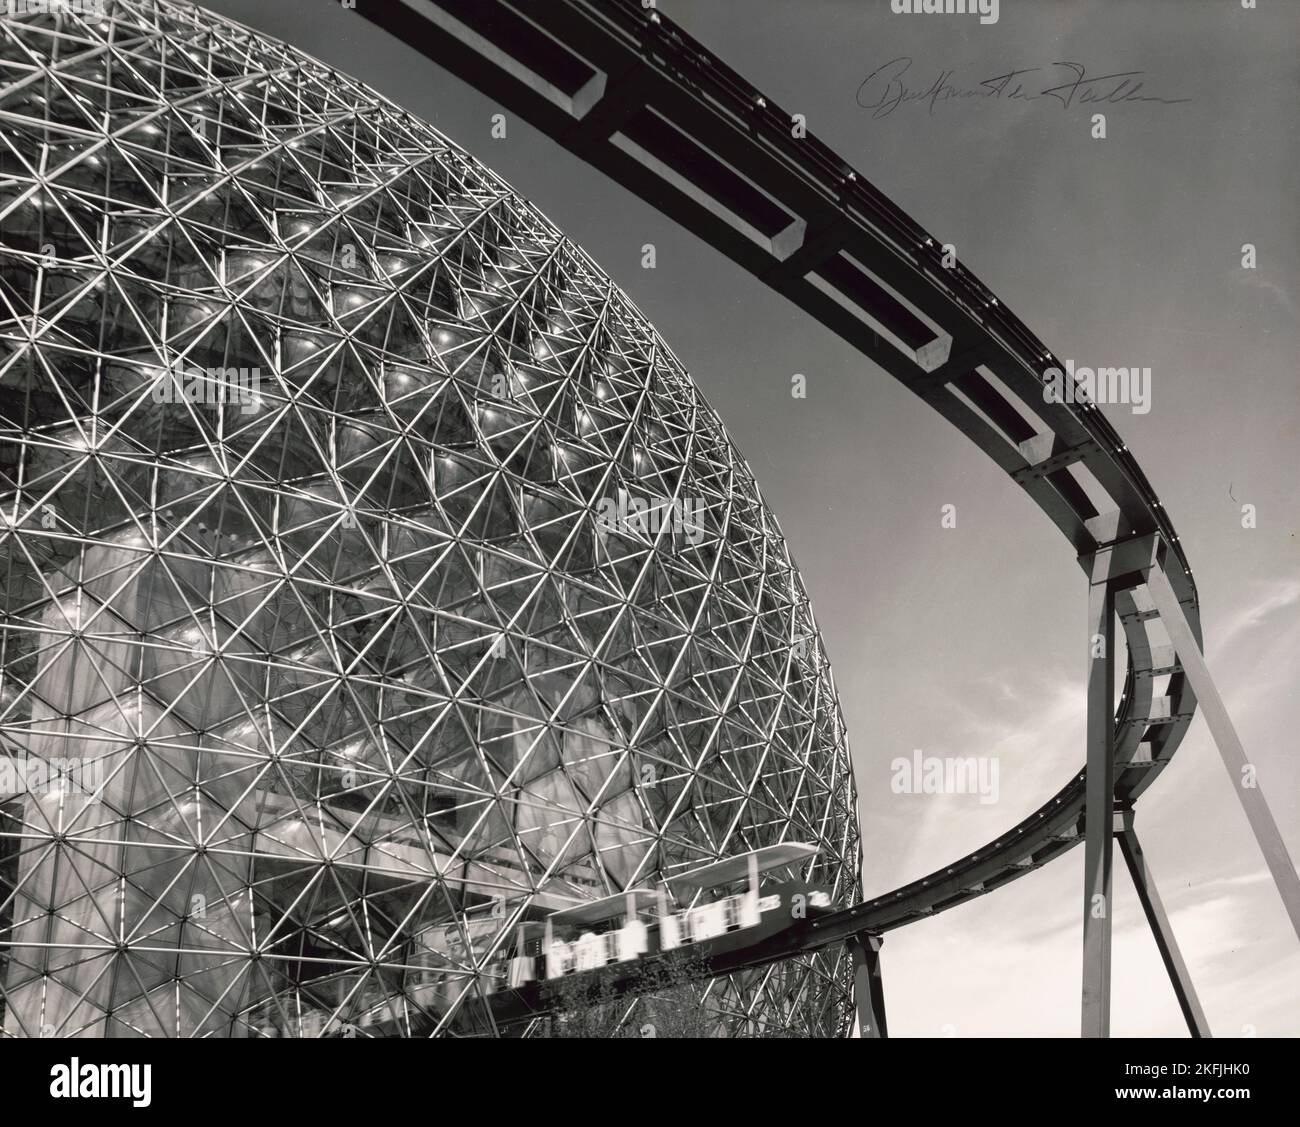 Schwarz-Weiß-Foto der Monorail und der geodätischen Kuppel auf der Expo 67 in Montreal, Quebec, Kanada, entworfen vom amerikanischen Architekten Buckminster Fuller. In diesem Gebäude befand sich der amerikanische Pavillon auf der Weltausstellung 1967 in Montreal. Foto von Bill Engdahl und signiert von Buckminster Fuller. Stockfoto